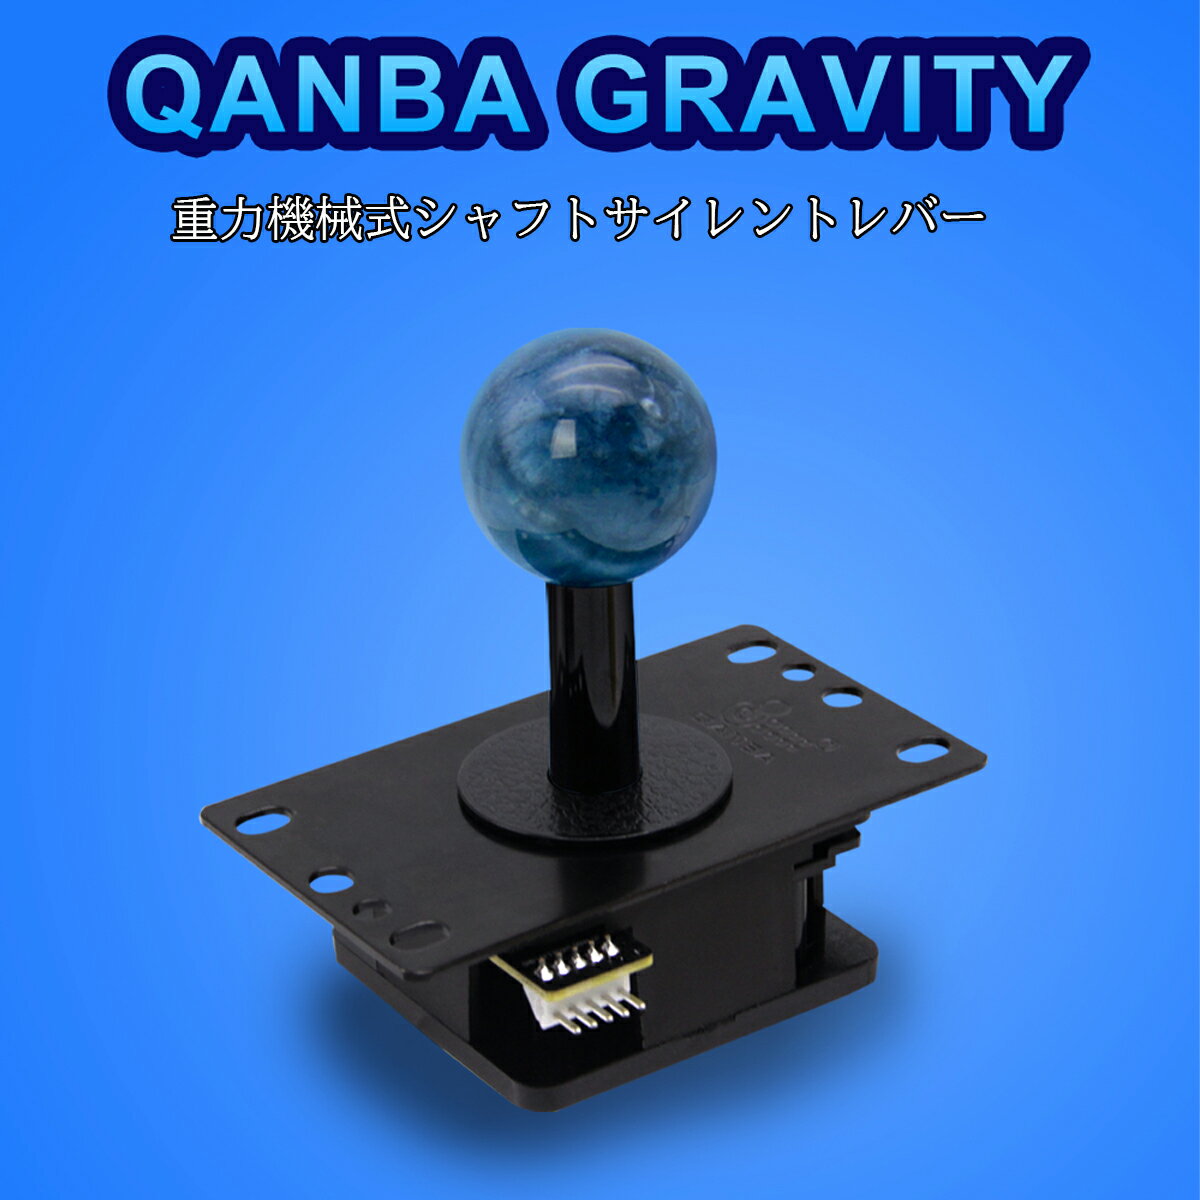 【Qanba正規品】Qanba Gravity クァンバ グラビティ メカニカル シャフト スイッチ 静音レバー レバーボール 四角ガイド 交換用 円形ガイド 標準スプリング 交換用 0.5倍弾力 2倍弾力 スプリン…